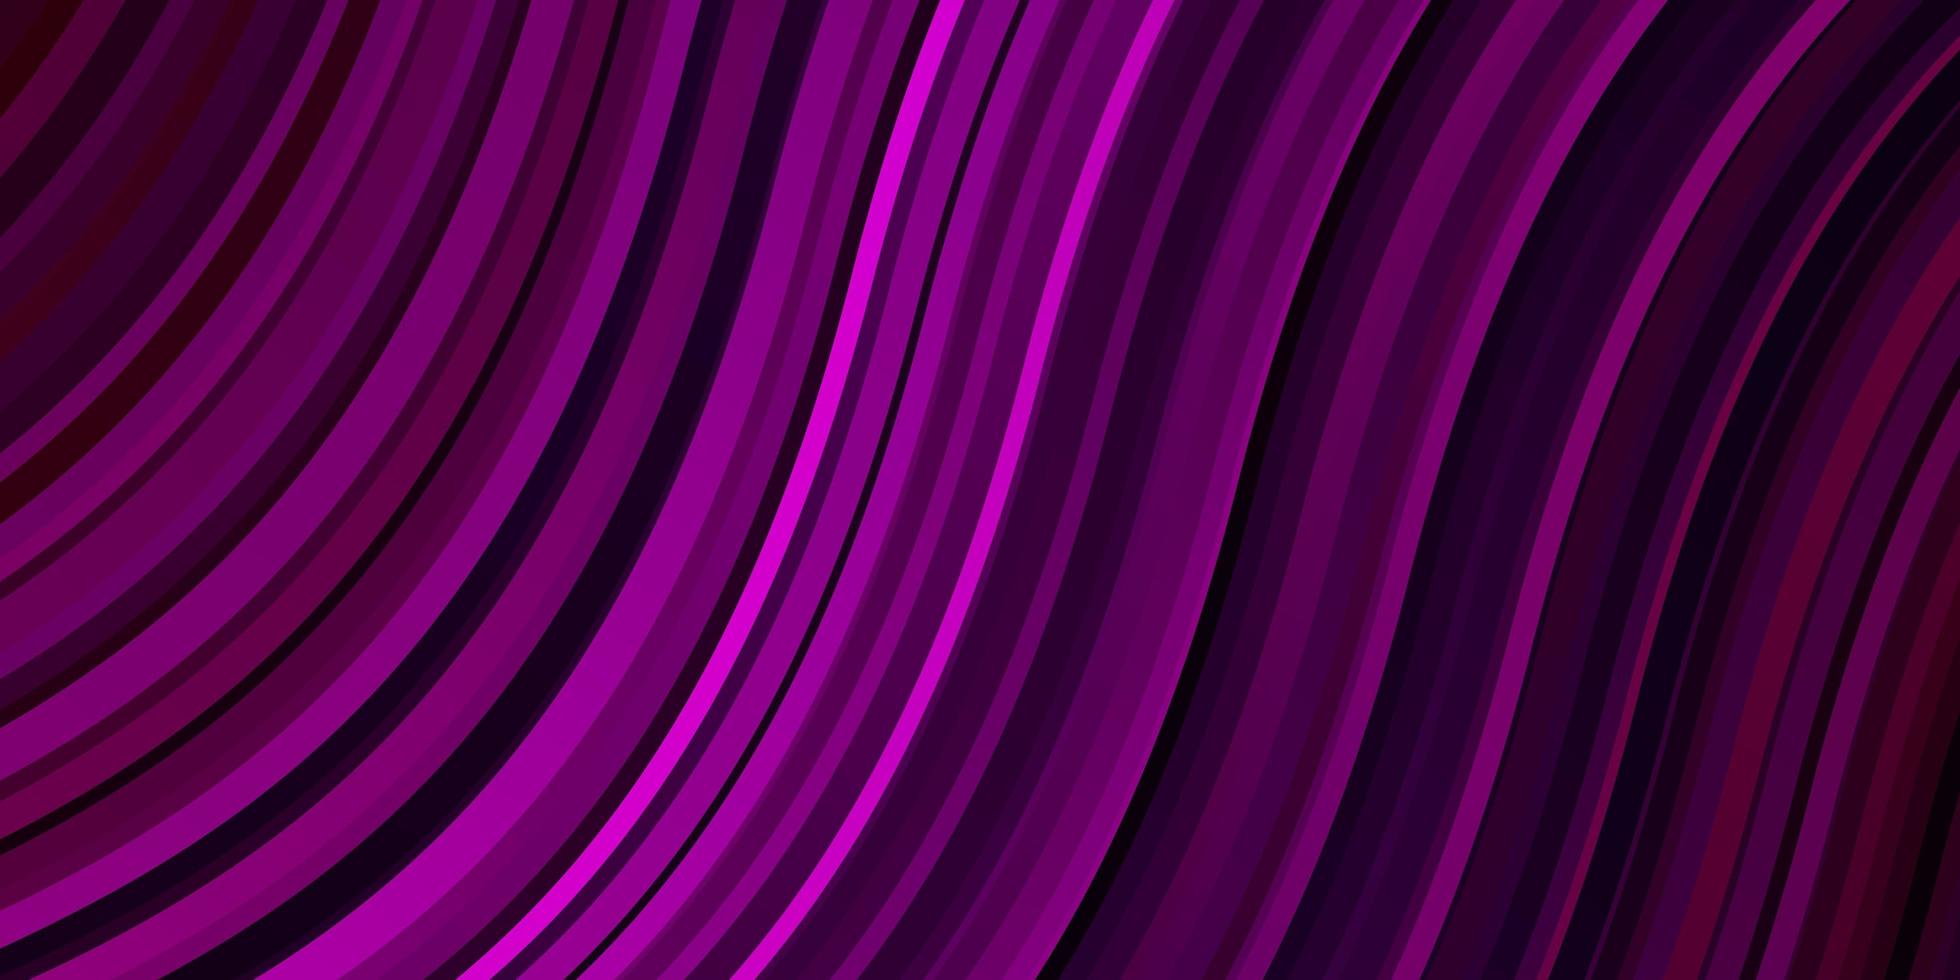 Plantilla de vector de color púrpura oscuro con curvas, ilustración abstracta con diseño de líneas de degradado bandy para la promoción de su negocio